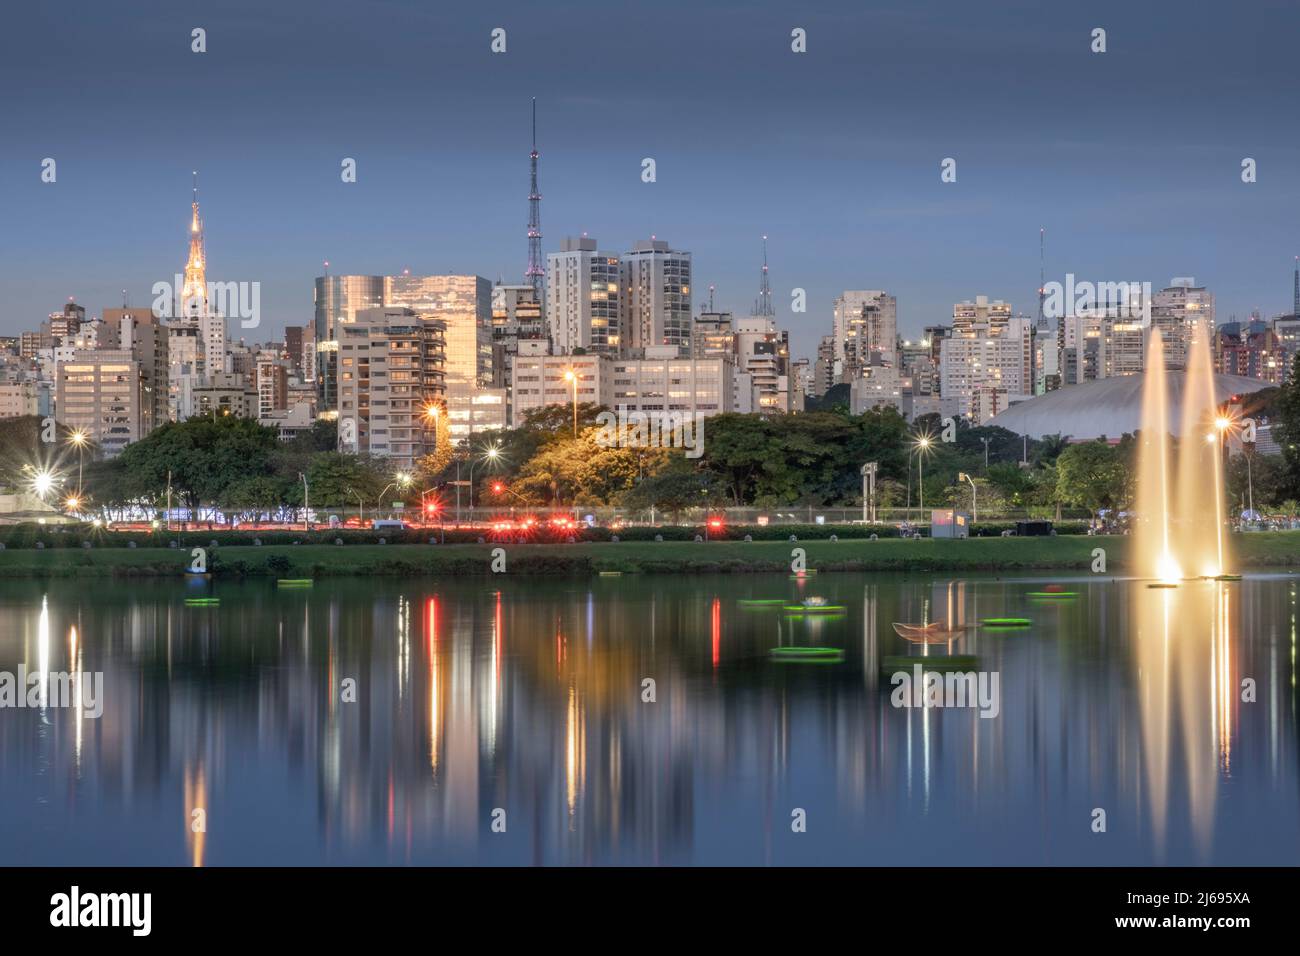 El horizonte urbano del centro se refleja en el lago Lago das Garcas al atardecer, Parque Ibirapuera, Sao Paulo, Brasil Foto de stock